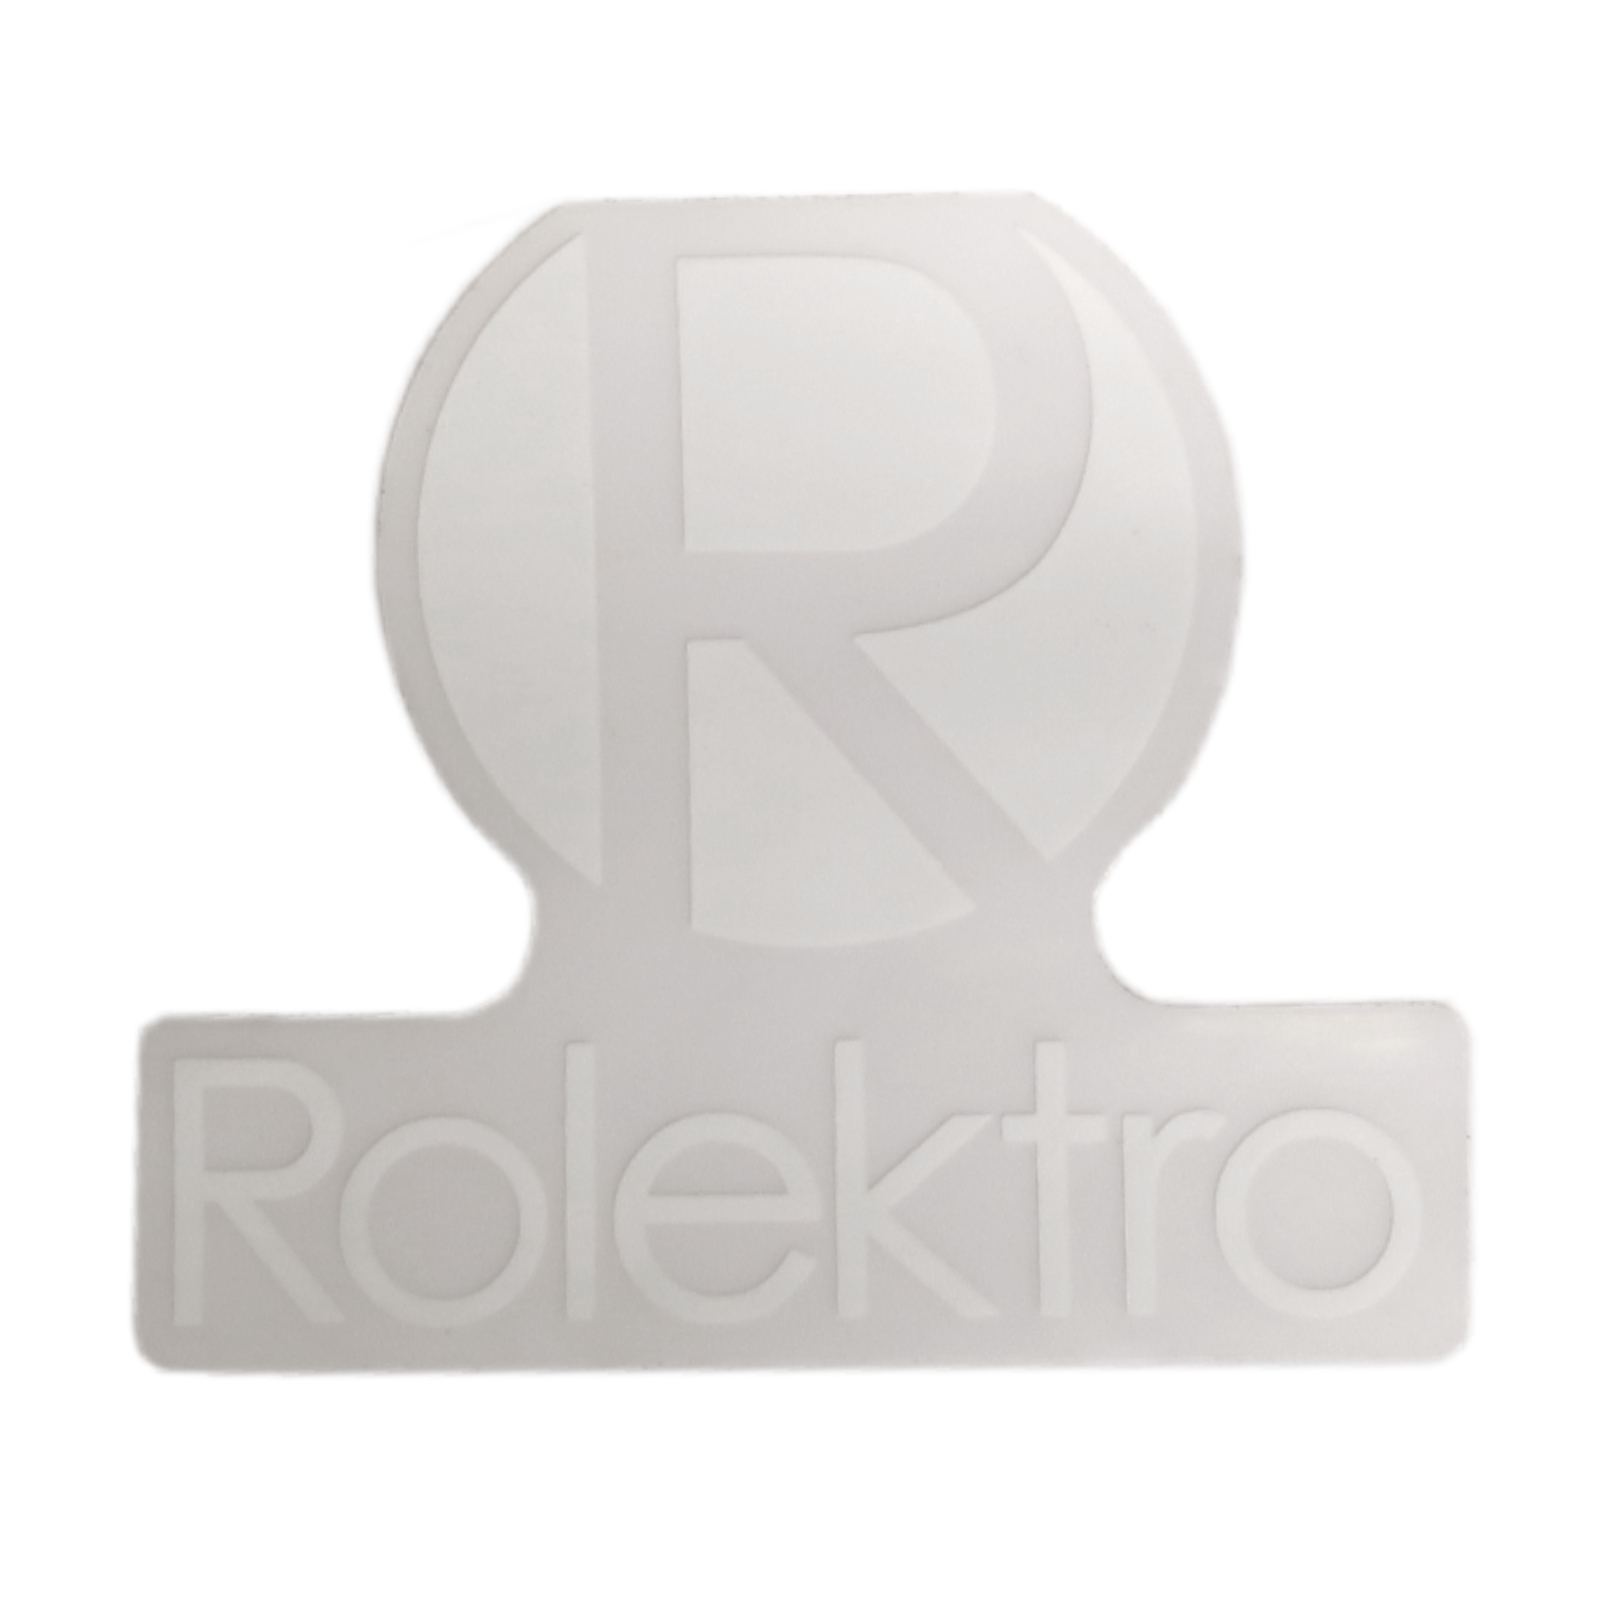 Retro45/Hero 45 - Aufkleber Rolektro, Verkleidung vorne